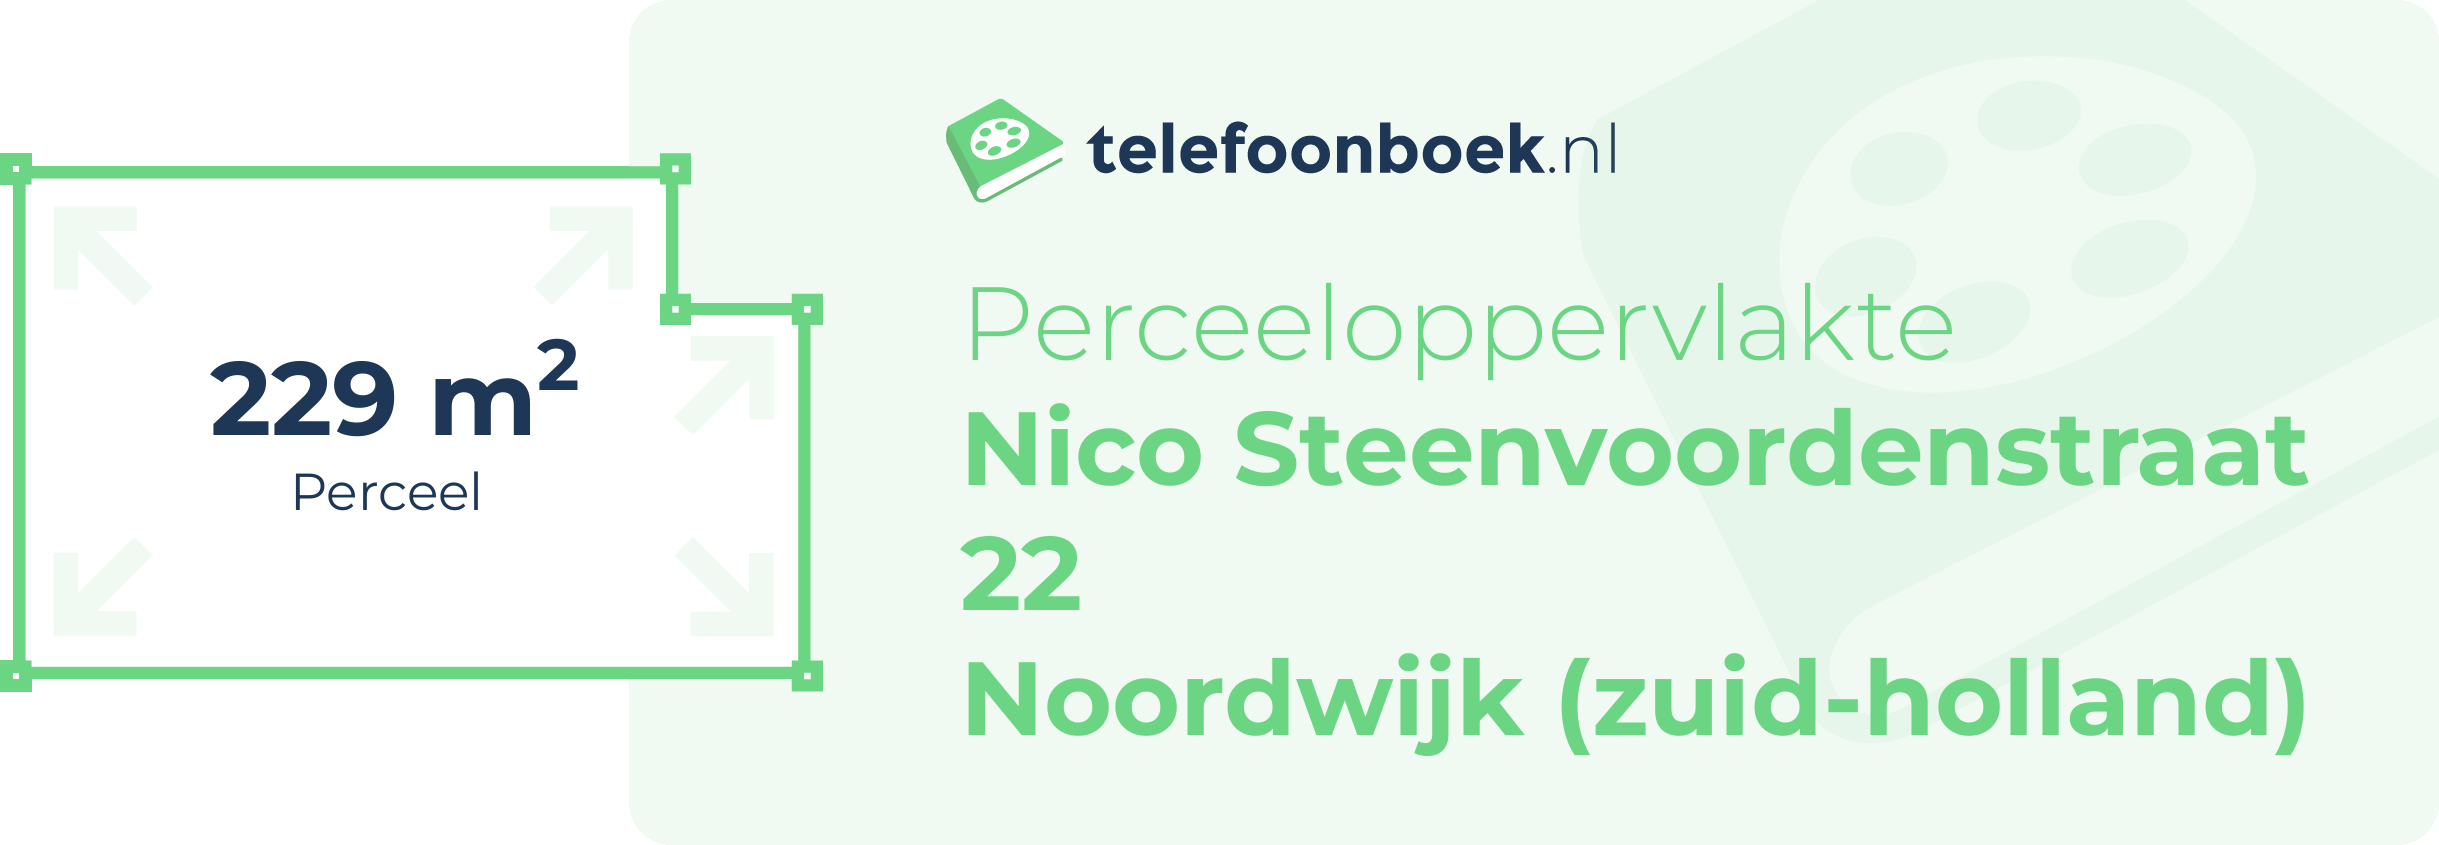 Perceeloppervlakte Nico Steenvoordenstraat 22 Noordwijk (Zuid-Holland)